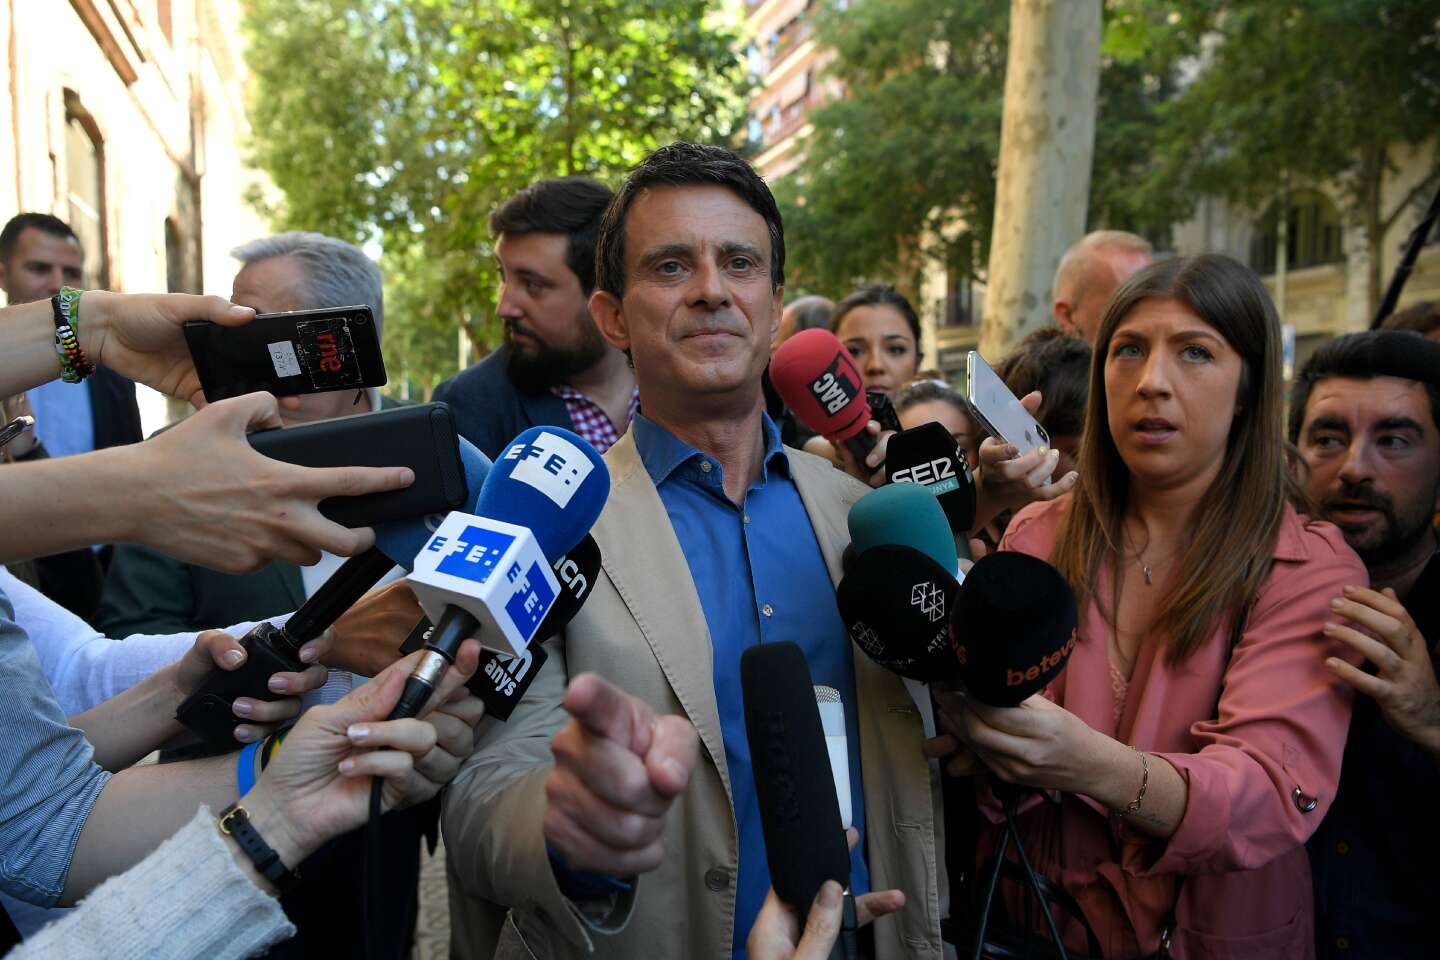 Le parti de Manuel Valls reçoit plus de 275 000 euros d’amende pour financement illicite de la campagne municipale de Barcelone